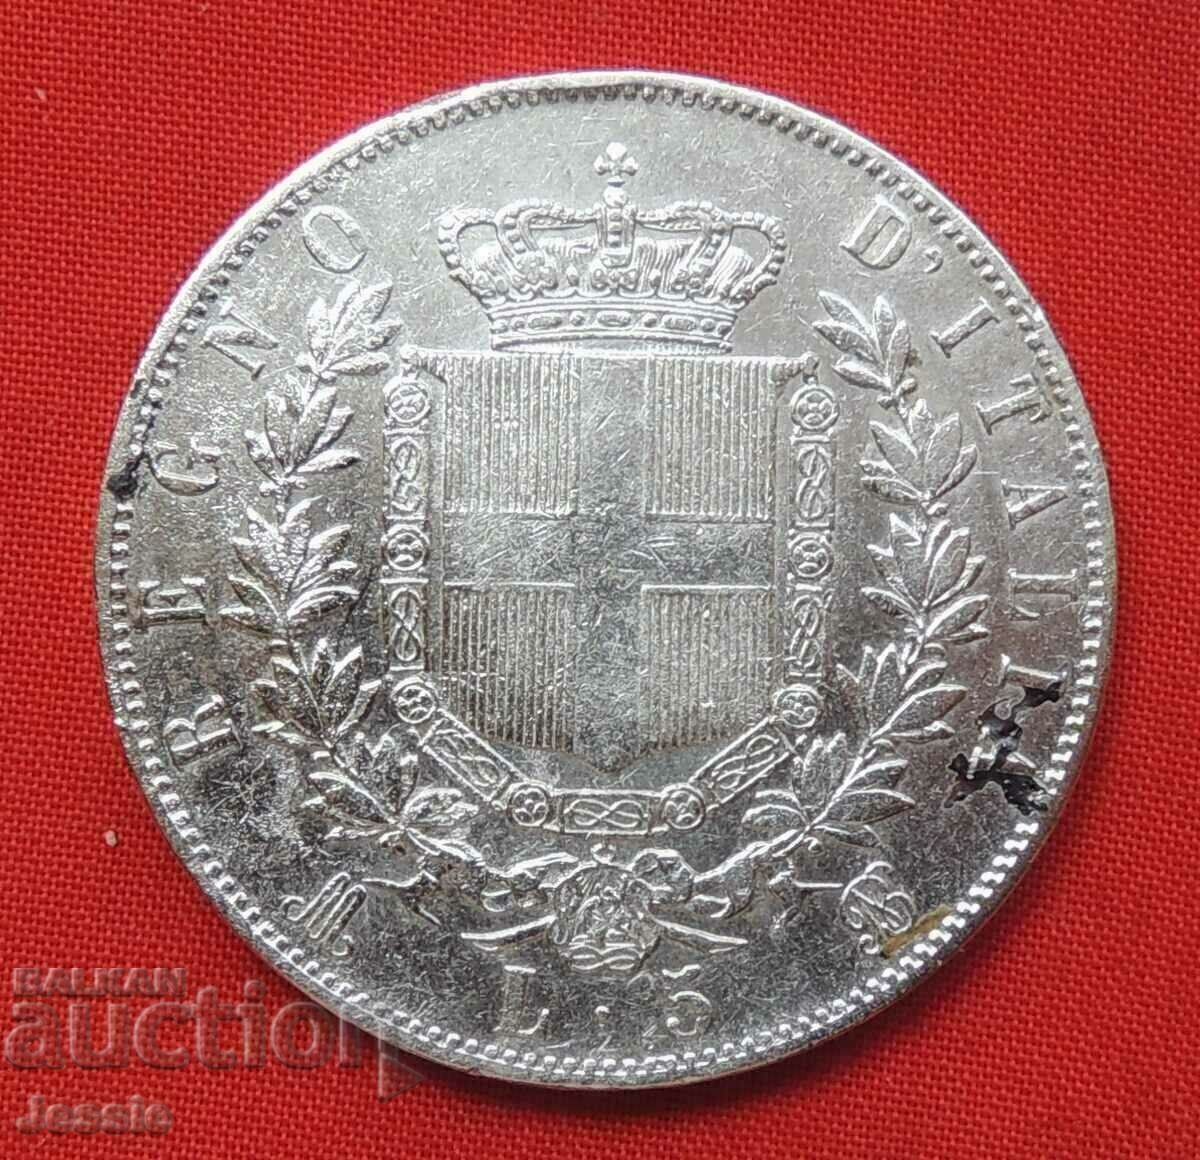 5 Lire 1869 M argint Italia